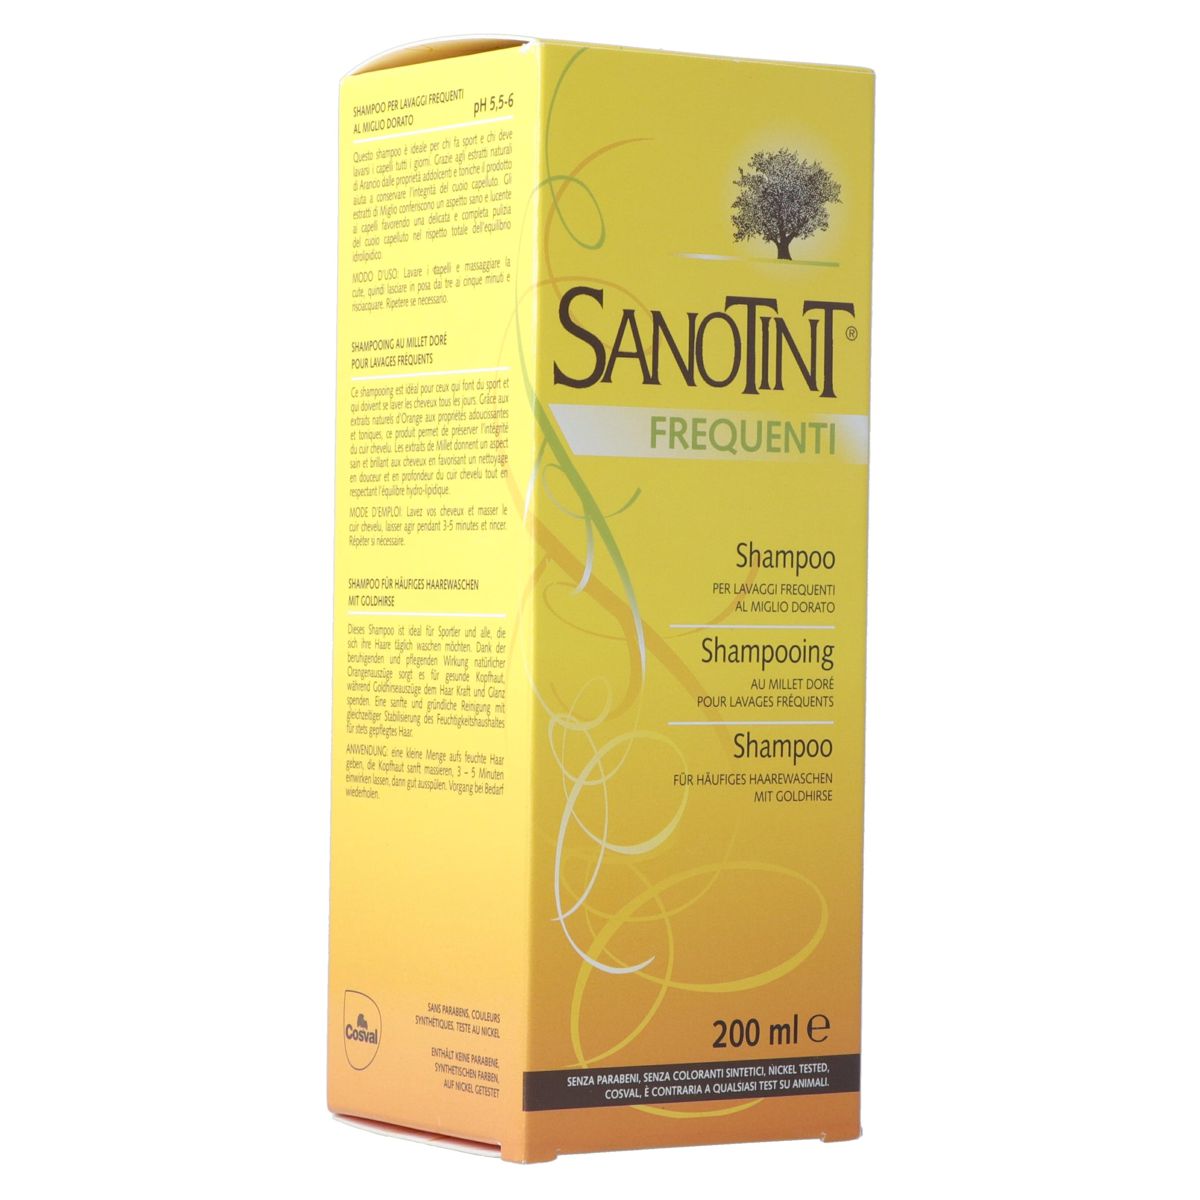 Sanotint Shampoo für häufiges Waschen 200 ml